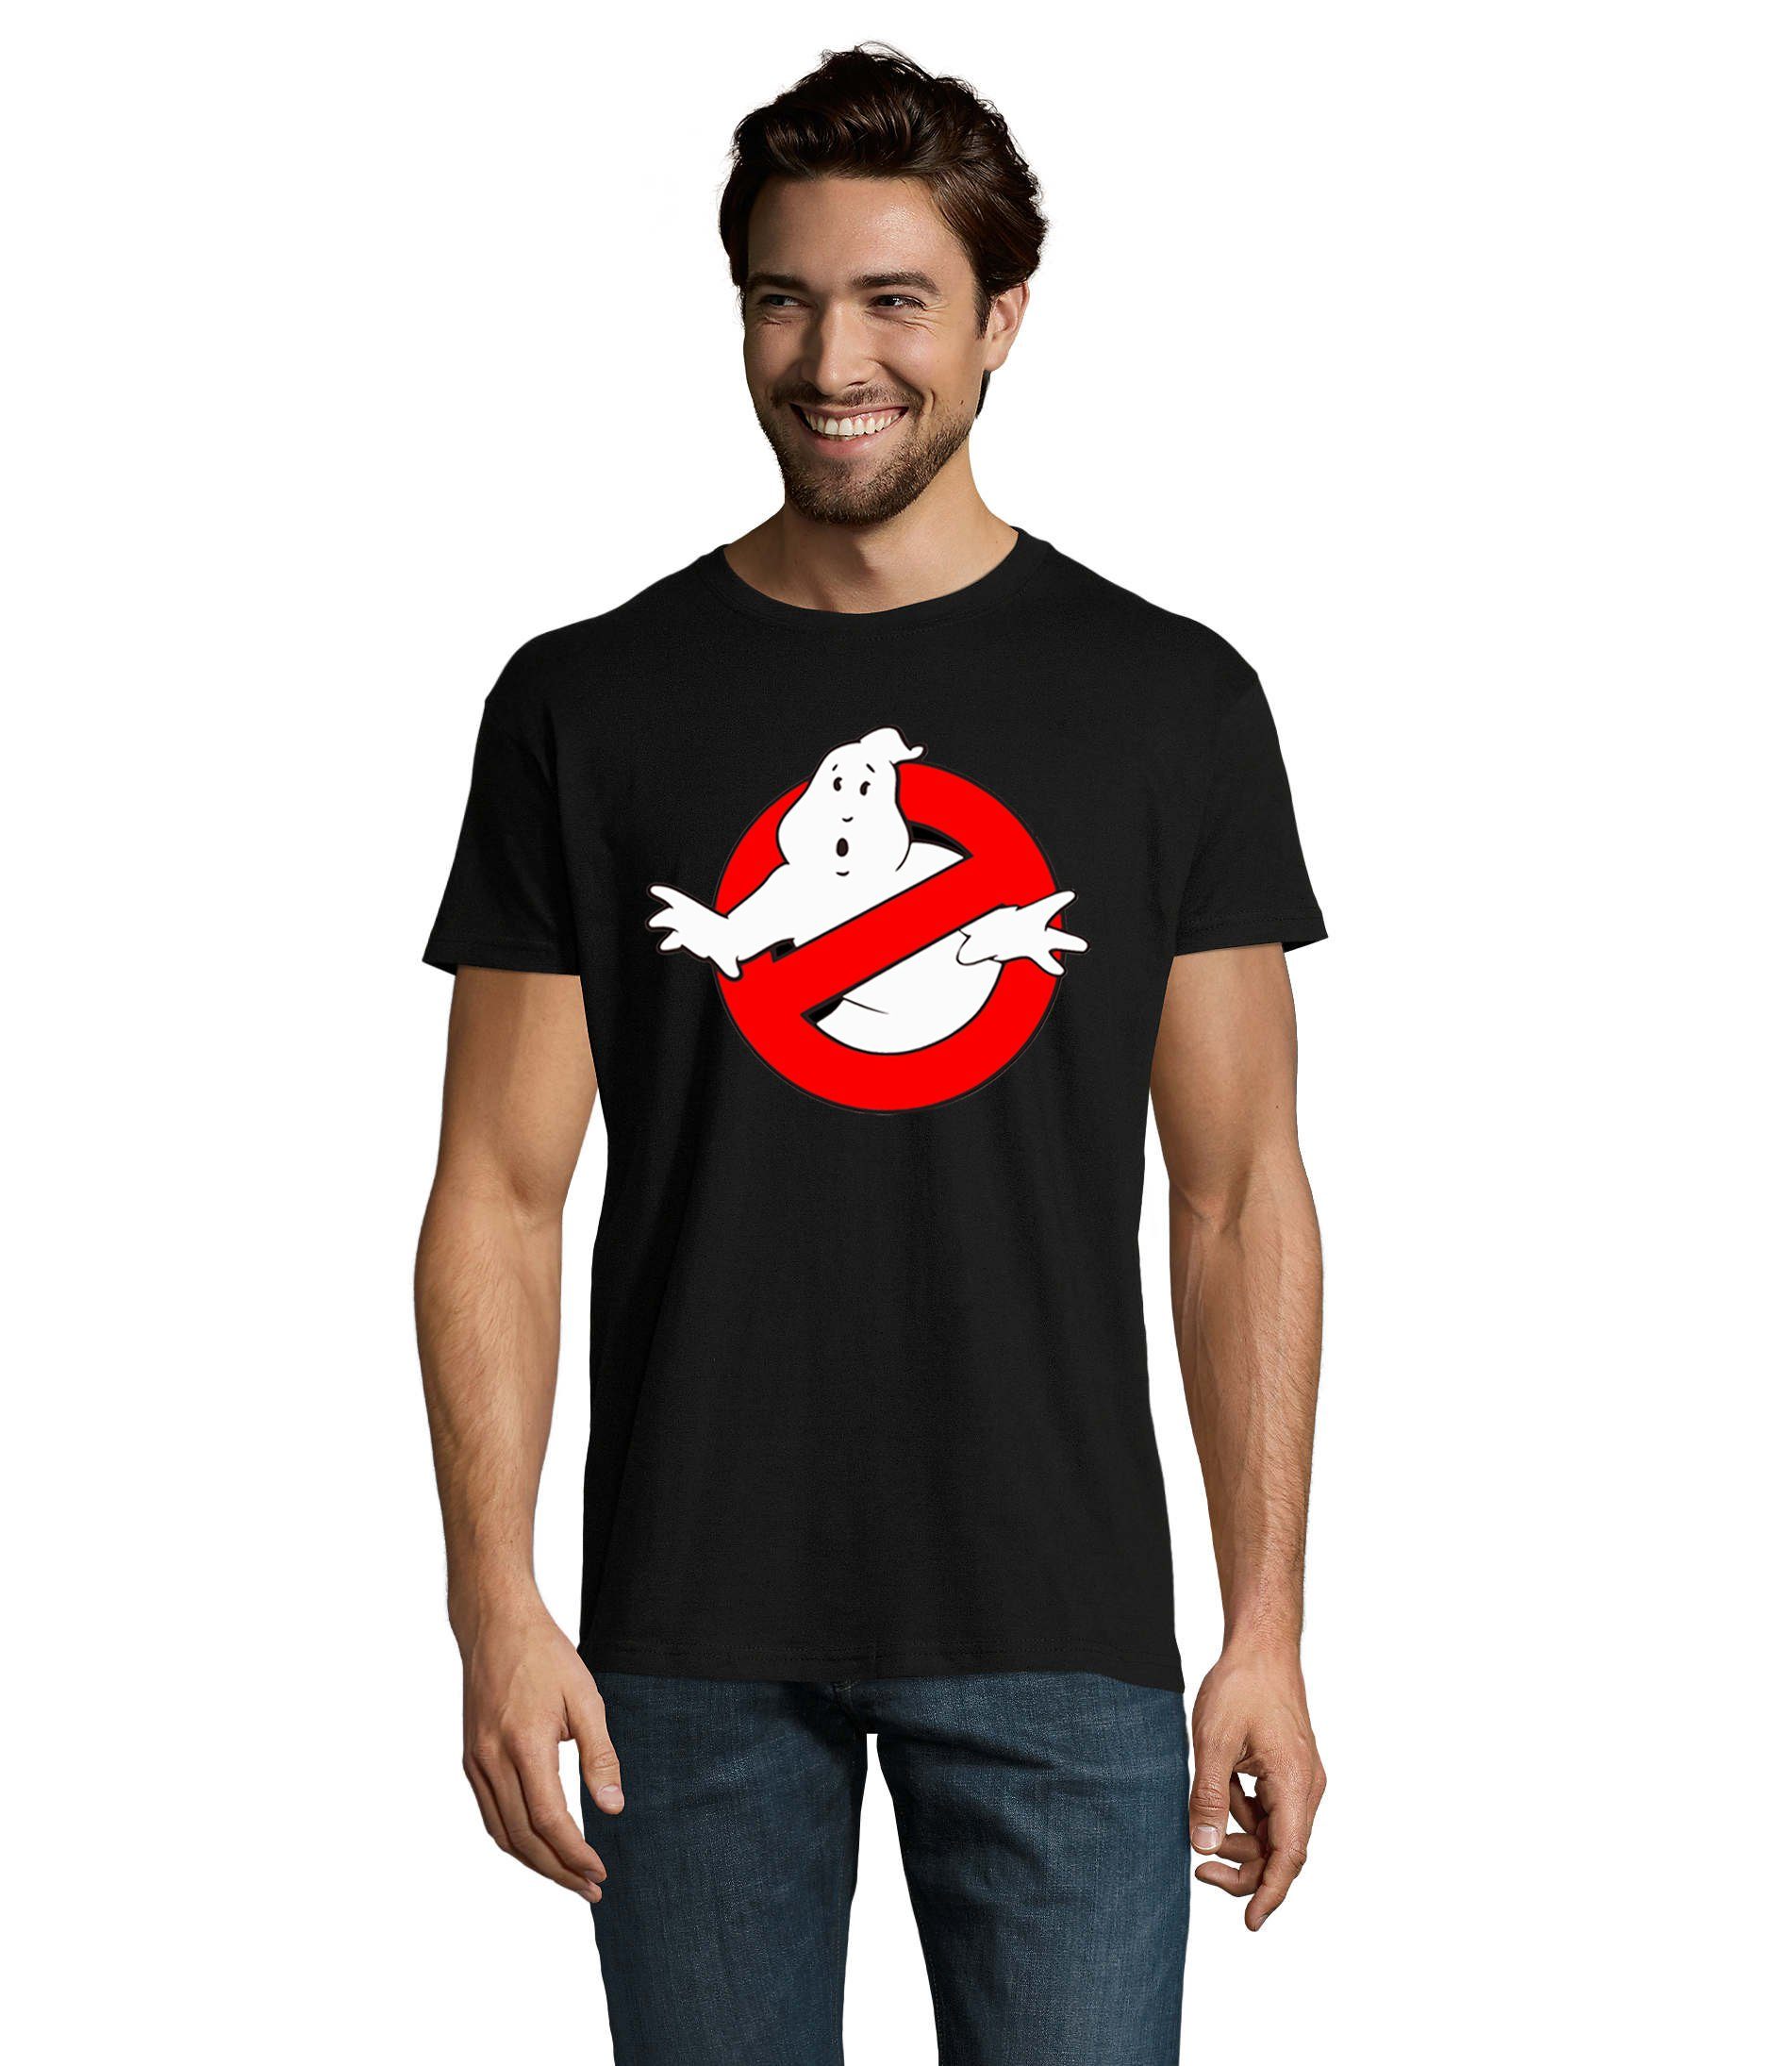 Blondie & Brownie T-Shirt Herren Ghostbusters Ghost Geister Geisterjäger